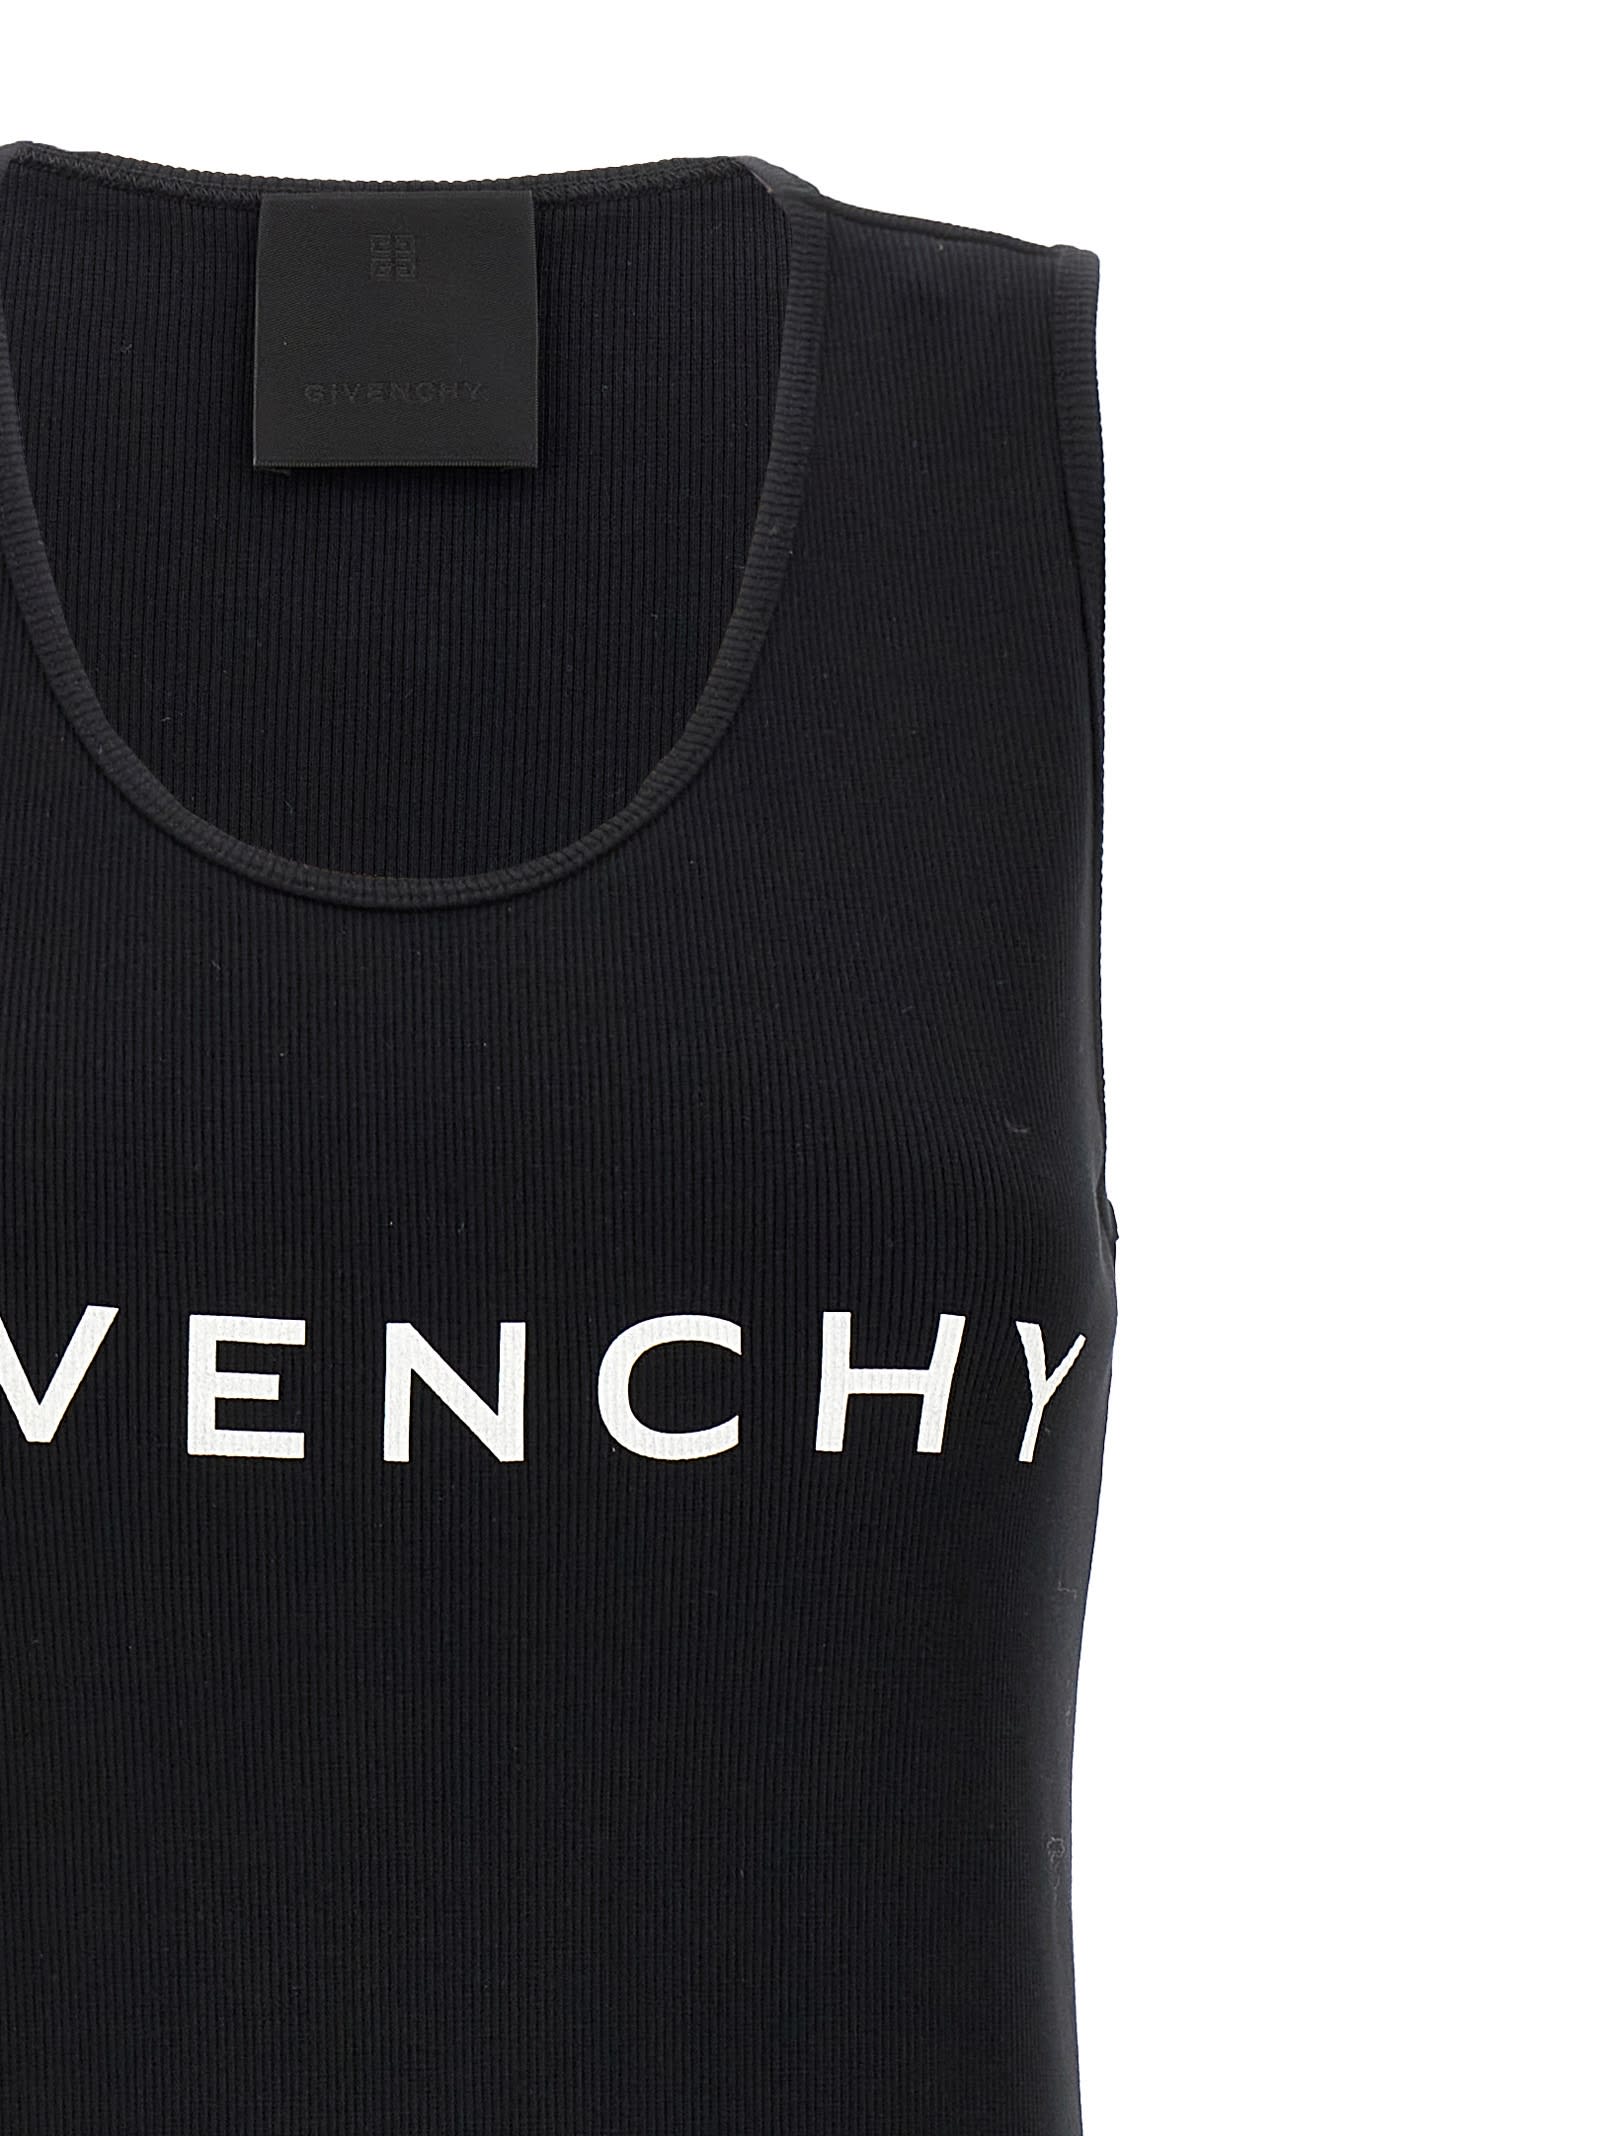 Shop Givenchy Logo Print Dress In White/black